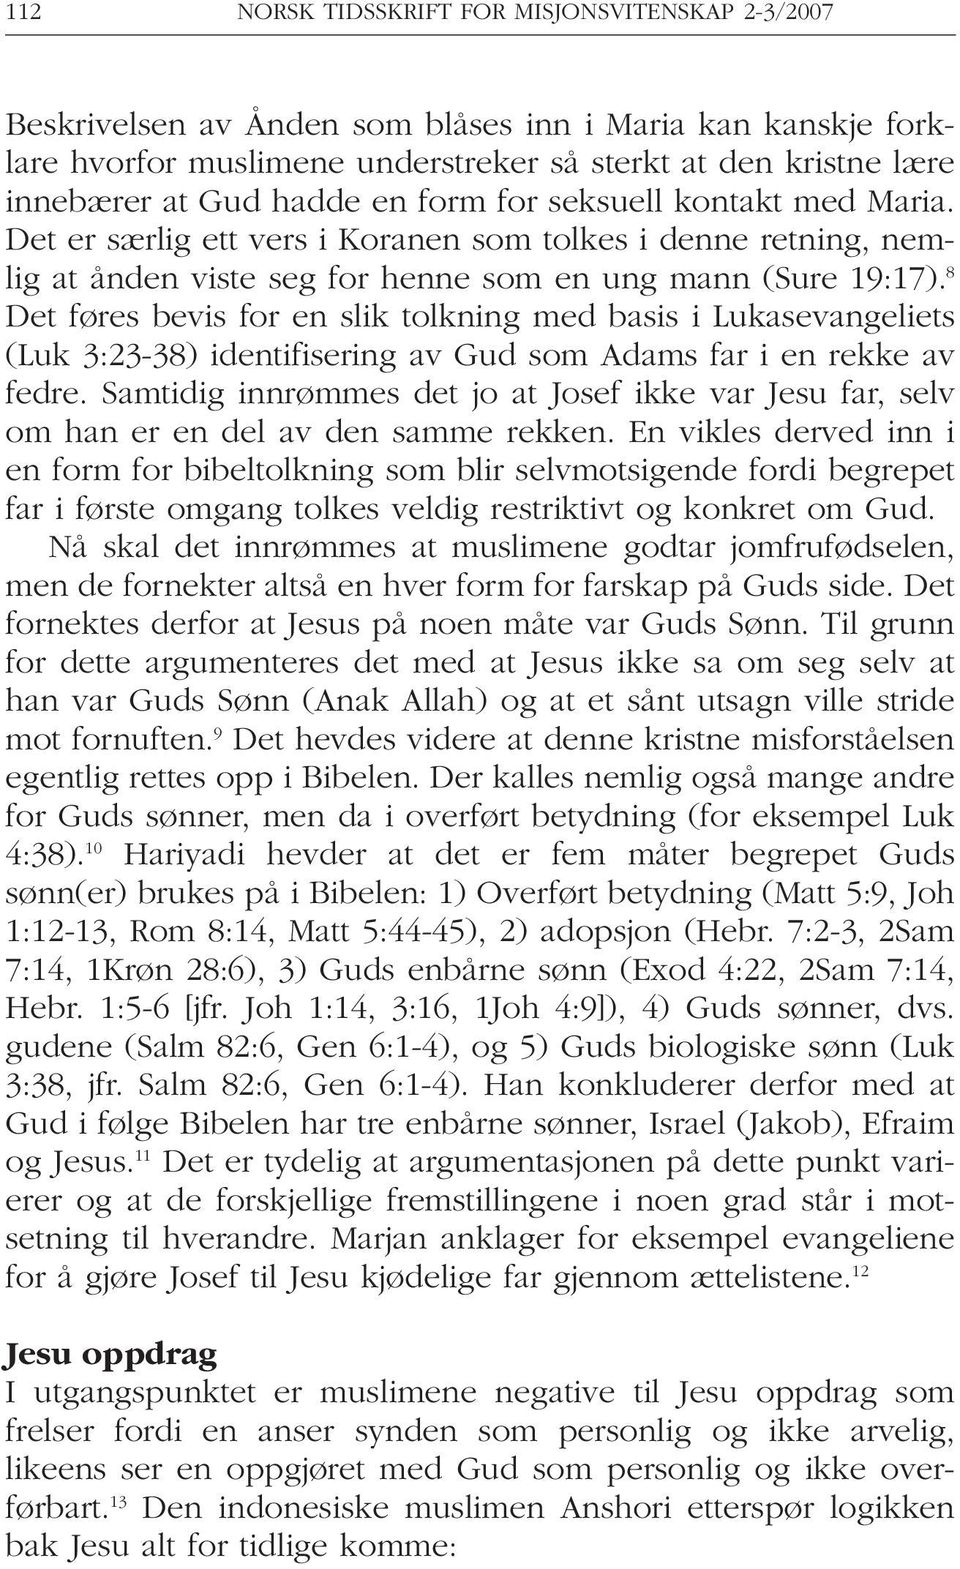 8 Det føres bevis for en slik tolkning med basis i Lukasevangeliets (Luk 3:23-38) identifisering av Gud som Adams far i en rekke av fedre.